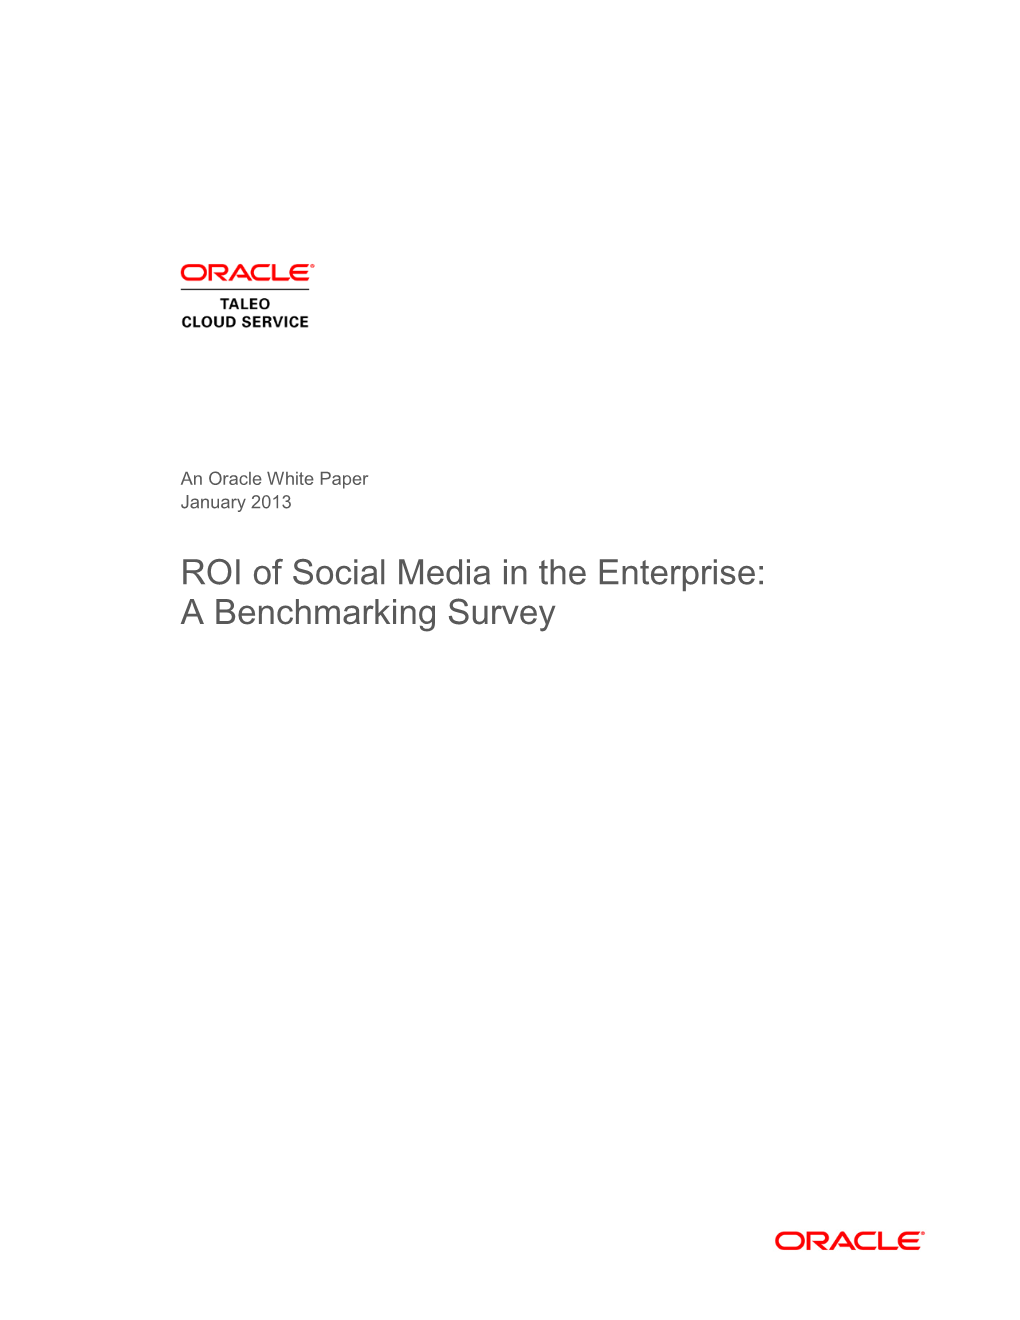 ROI of Social Media in the Enterprise: a Benchmarking Survey